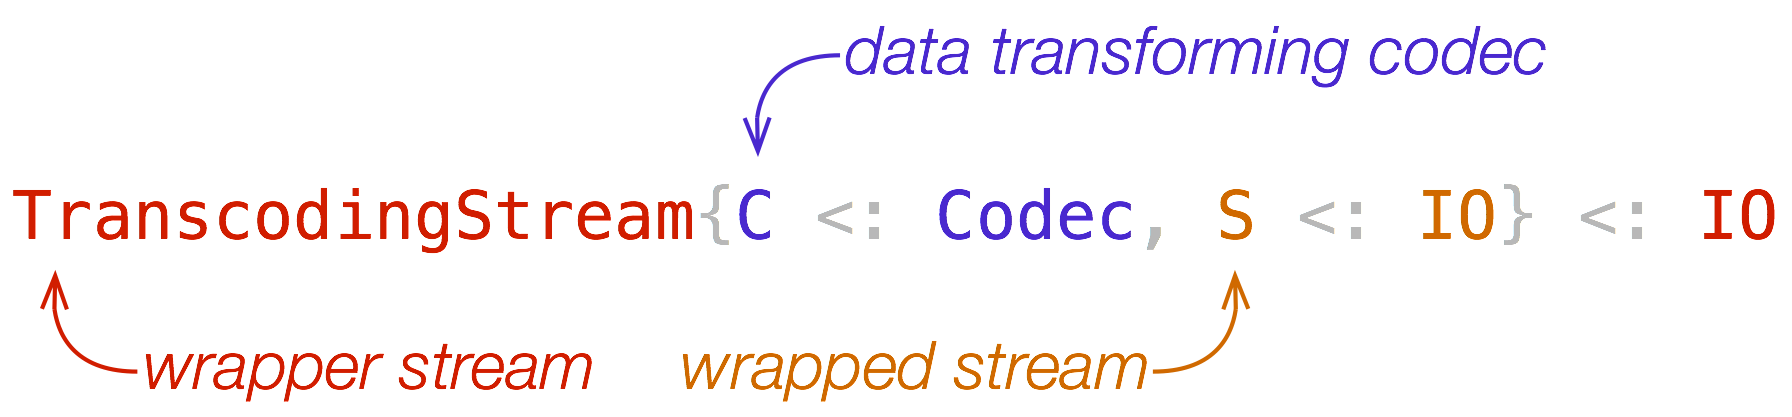 TranscodingStream